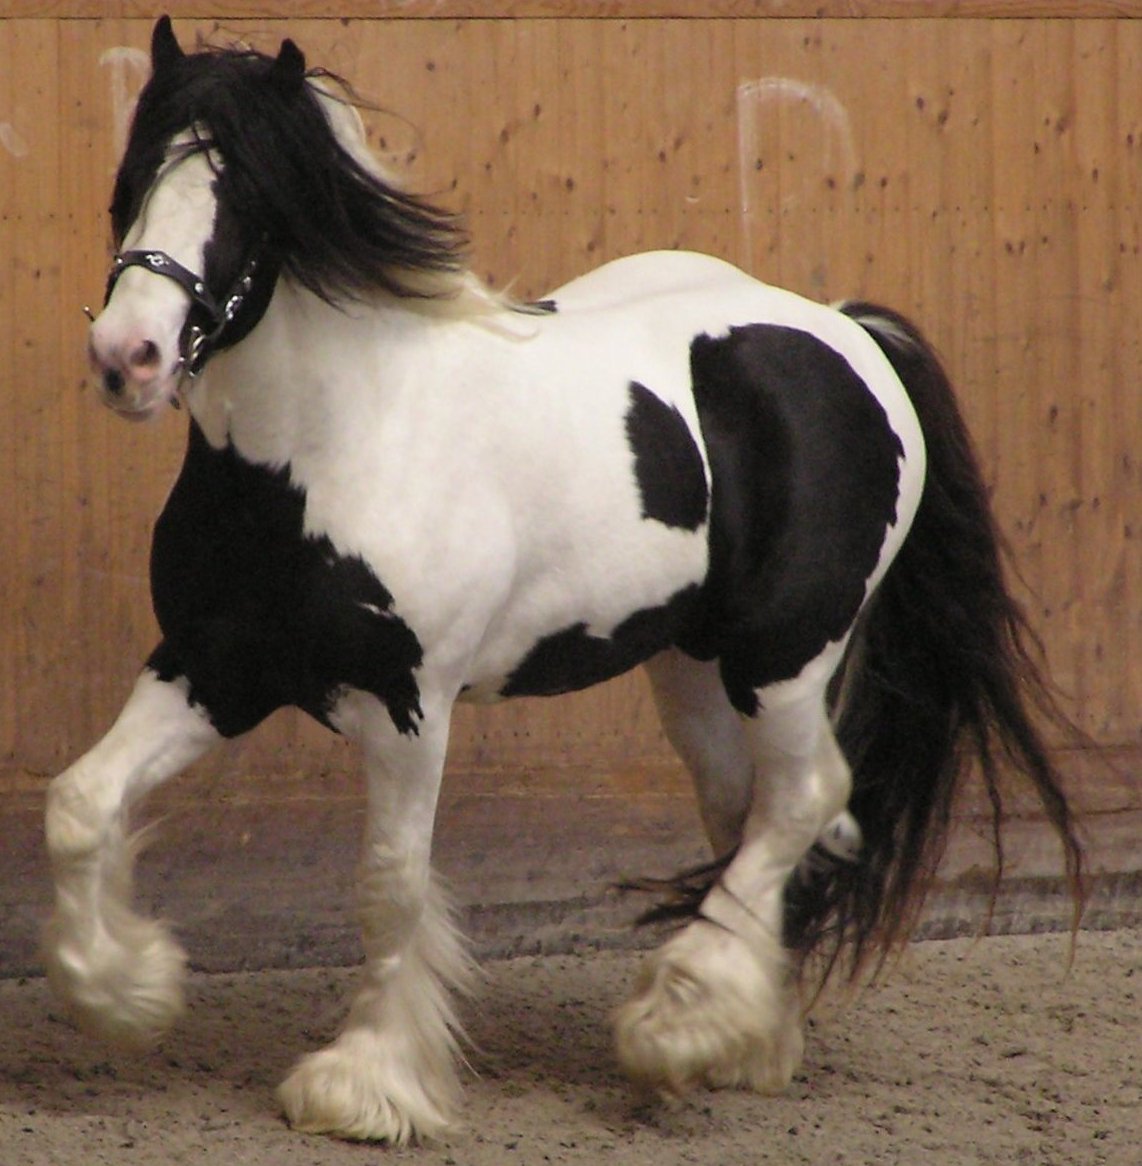 piebald horse